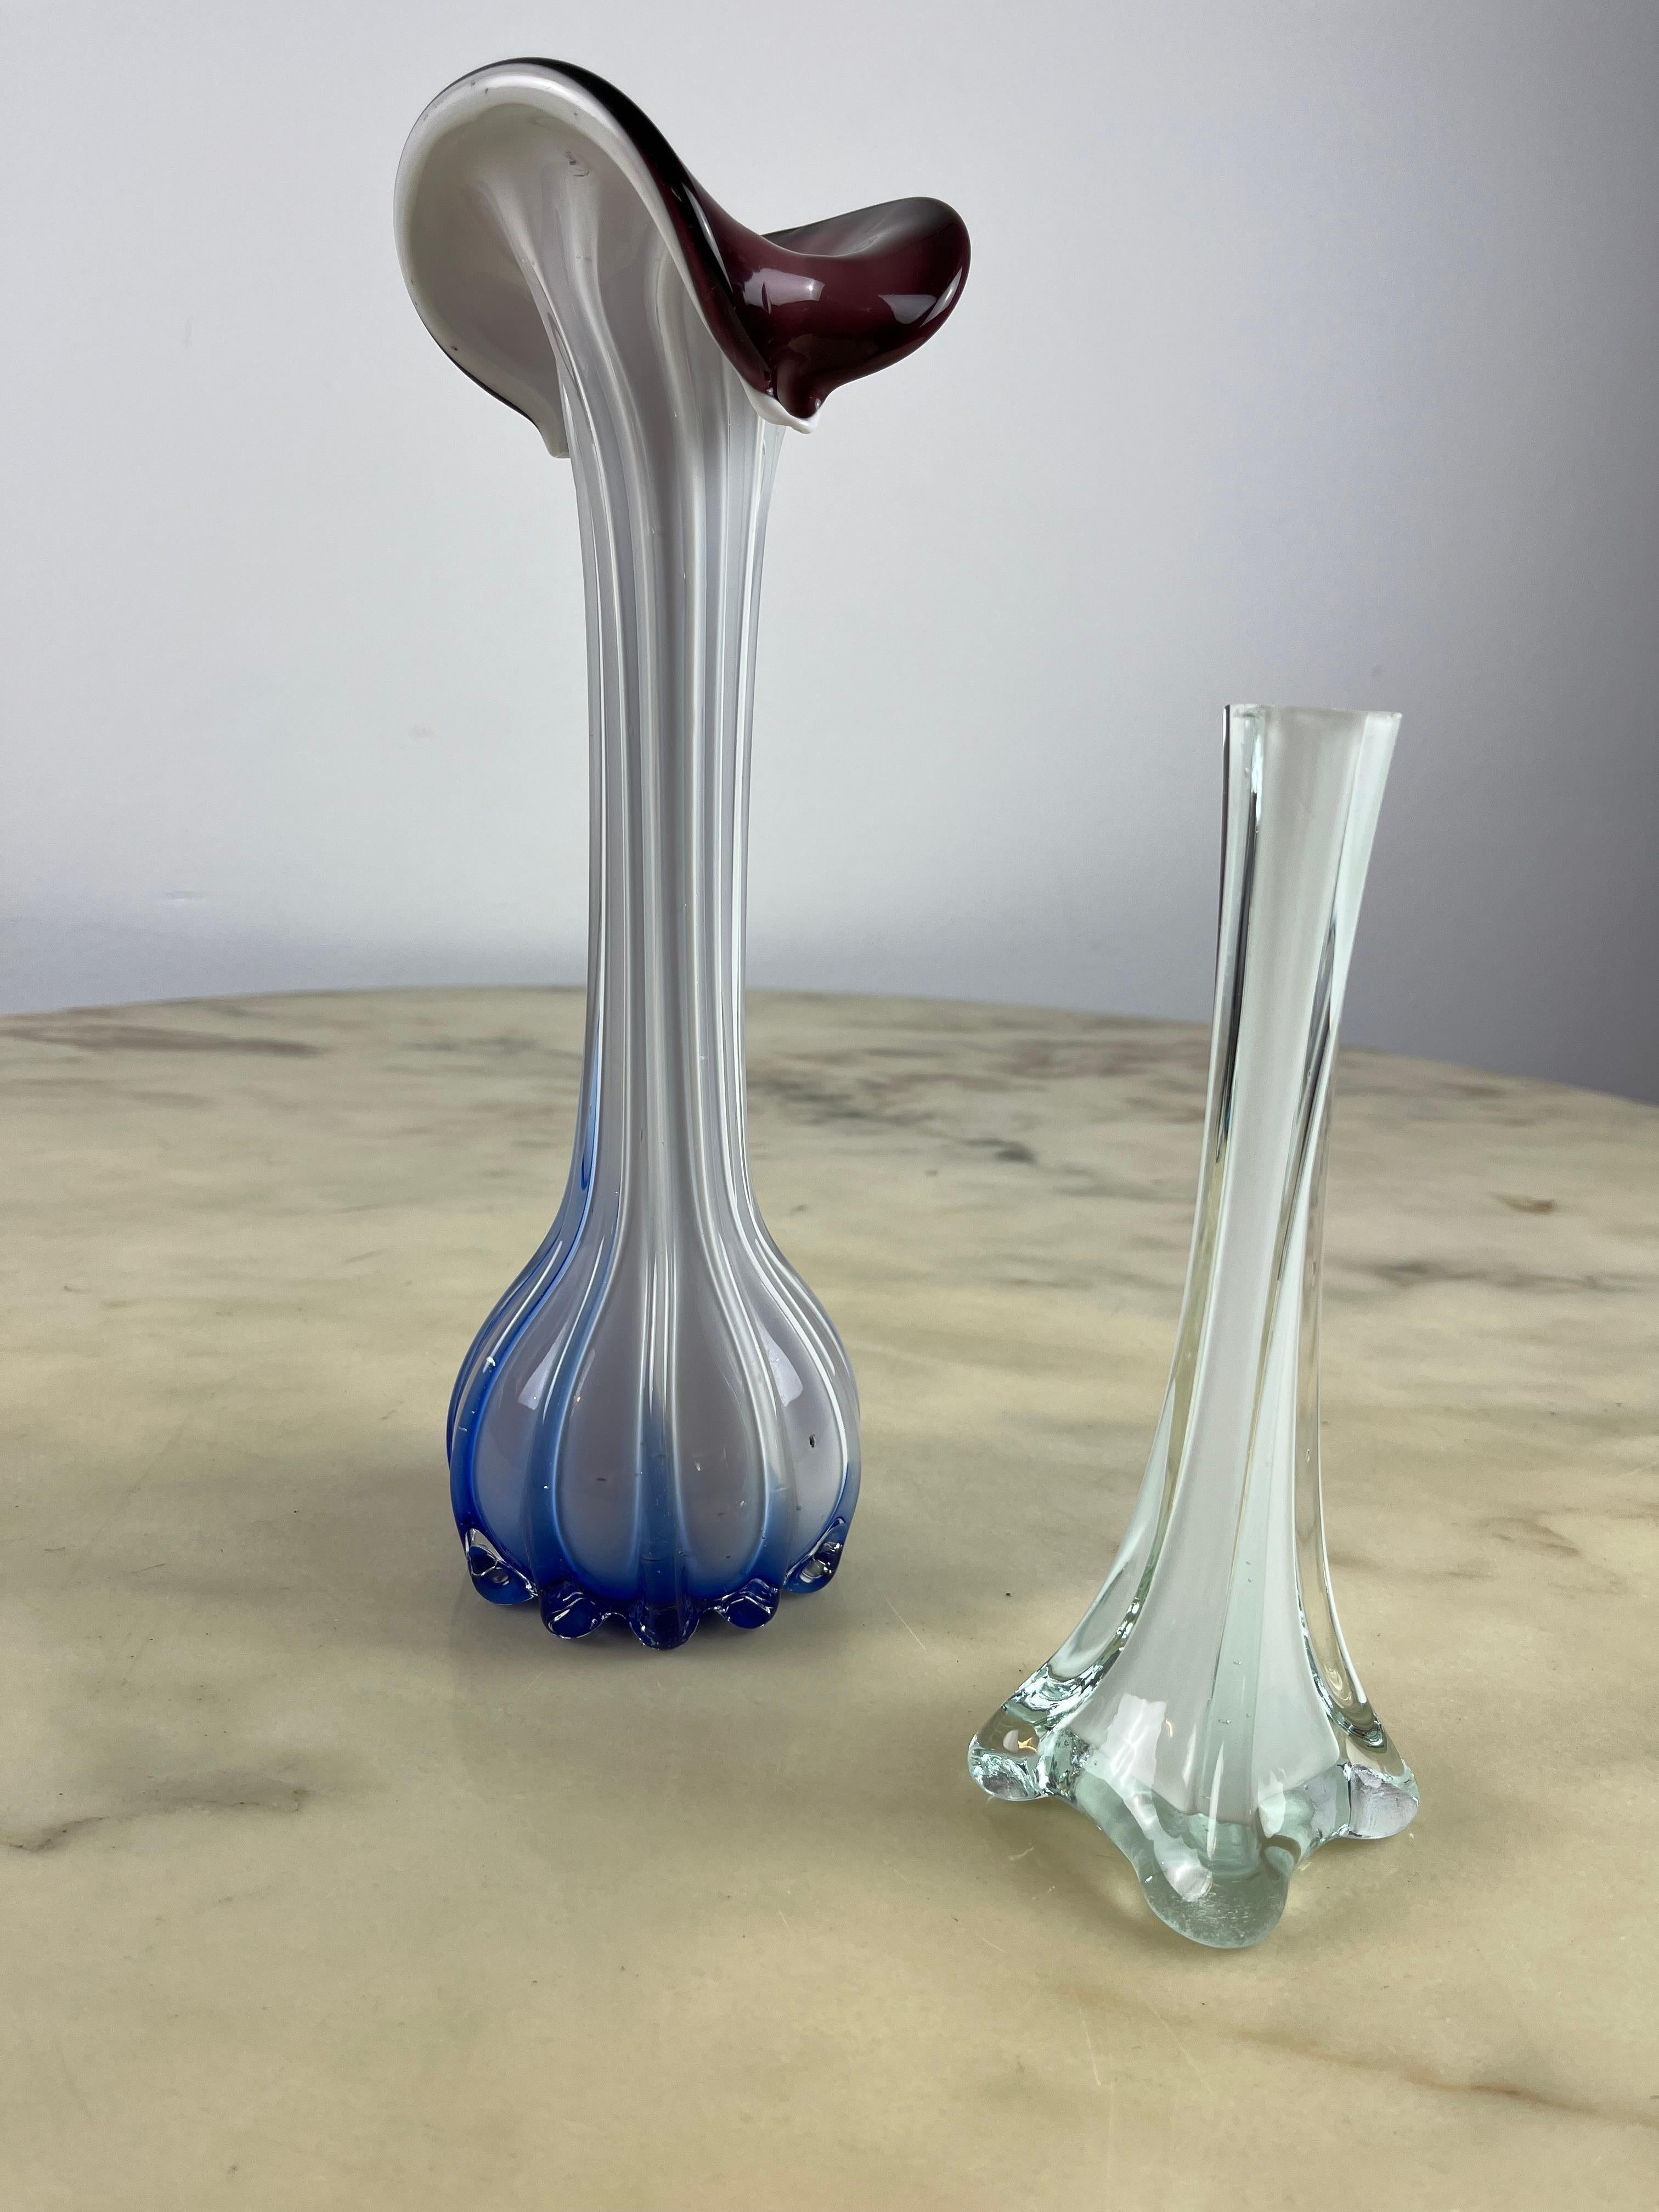 Paar kleine Murano-Vasen. Das größte Exemplar ist 29 cm hoch und 8 cm breit; das kleinste ist 20 cm hoch und 5,5 cm breit.
Sie stammen aus den 1970er Jahren. In gutem Zustand. Der größte hat kleine, vernachlässigbare Mängel.